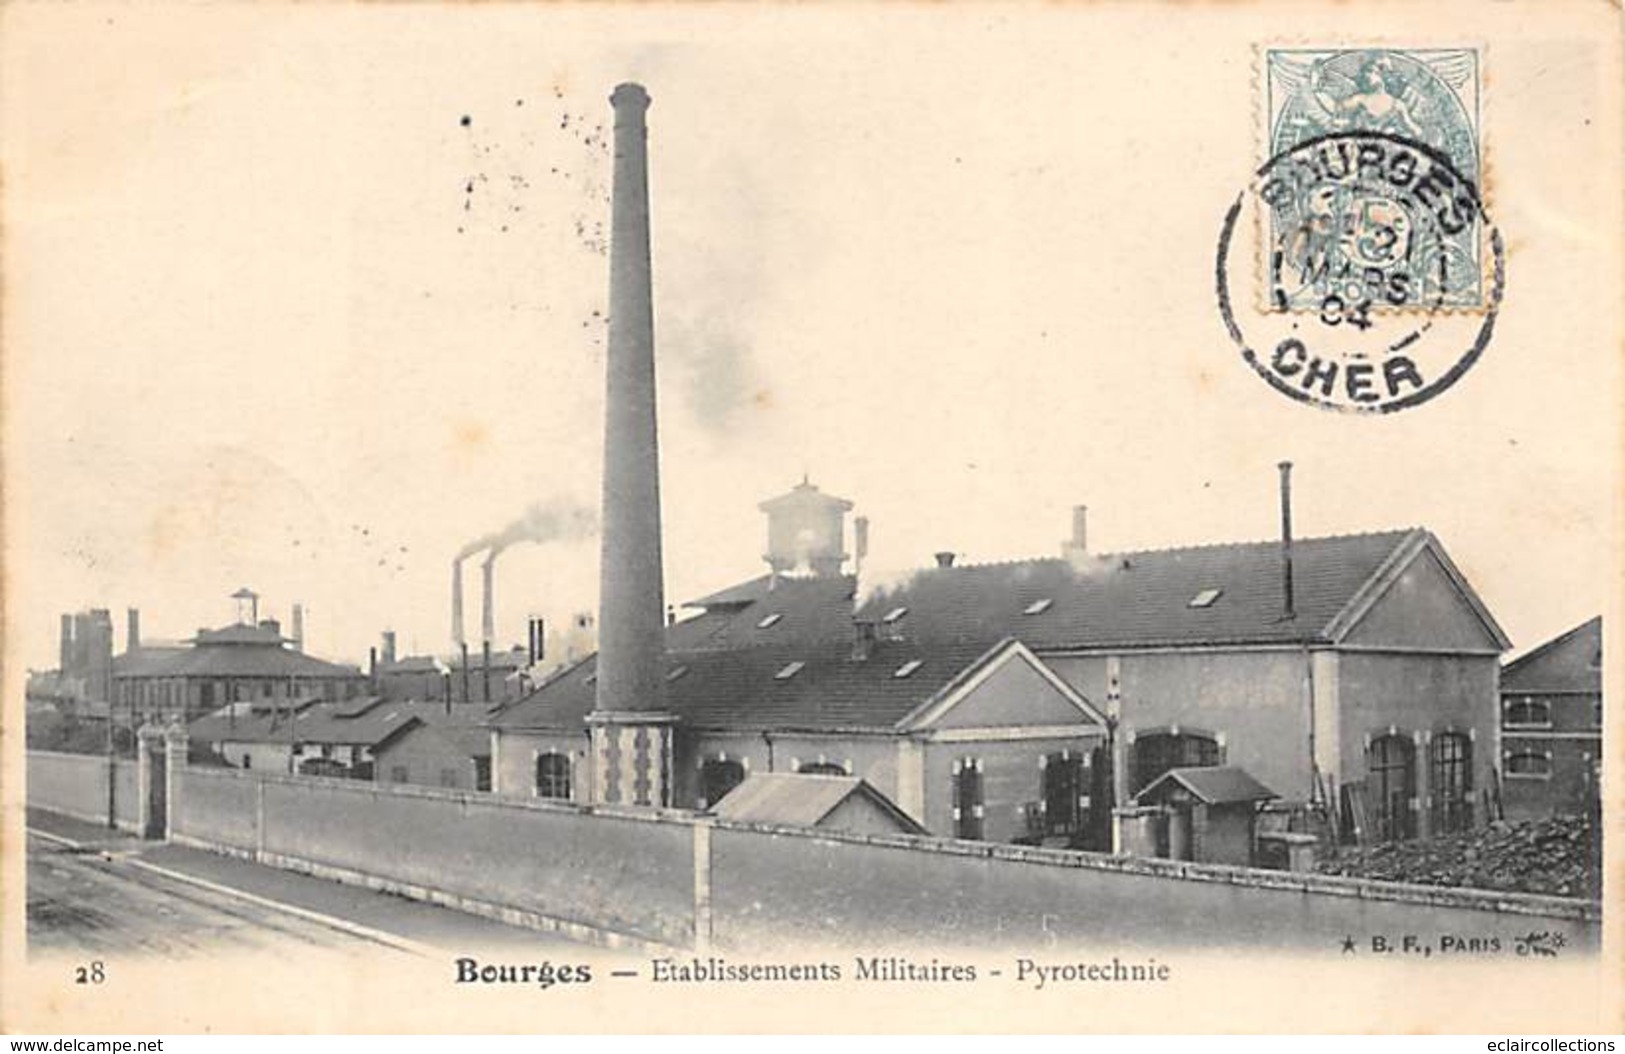 Bourges      18   Lot de 18 cartes  . Cortège historique,Commerce, Usine; Canal      (voir scan)